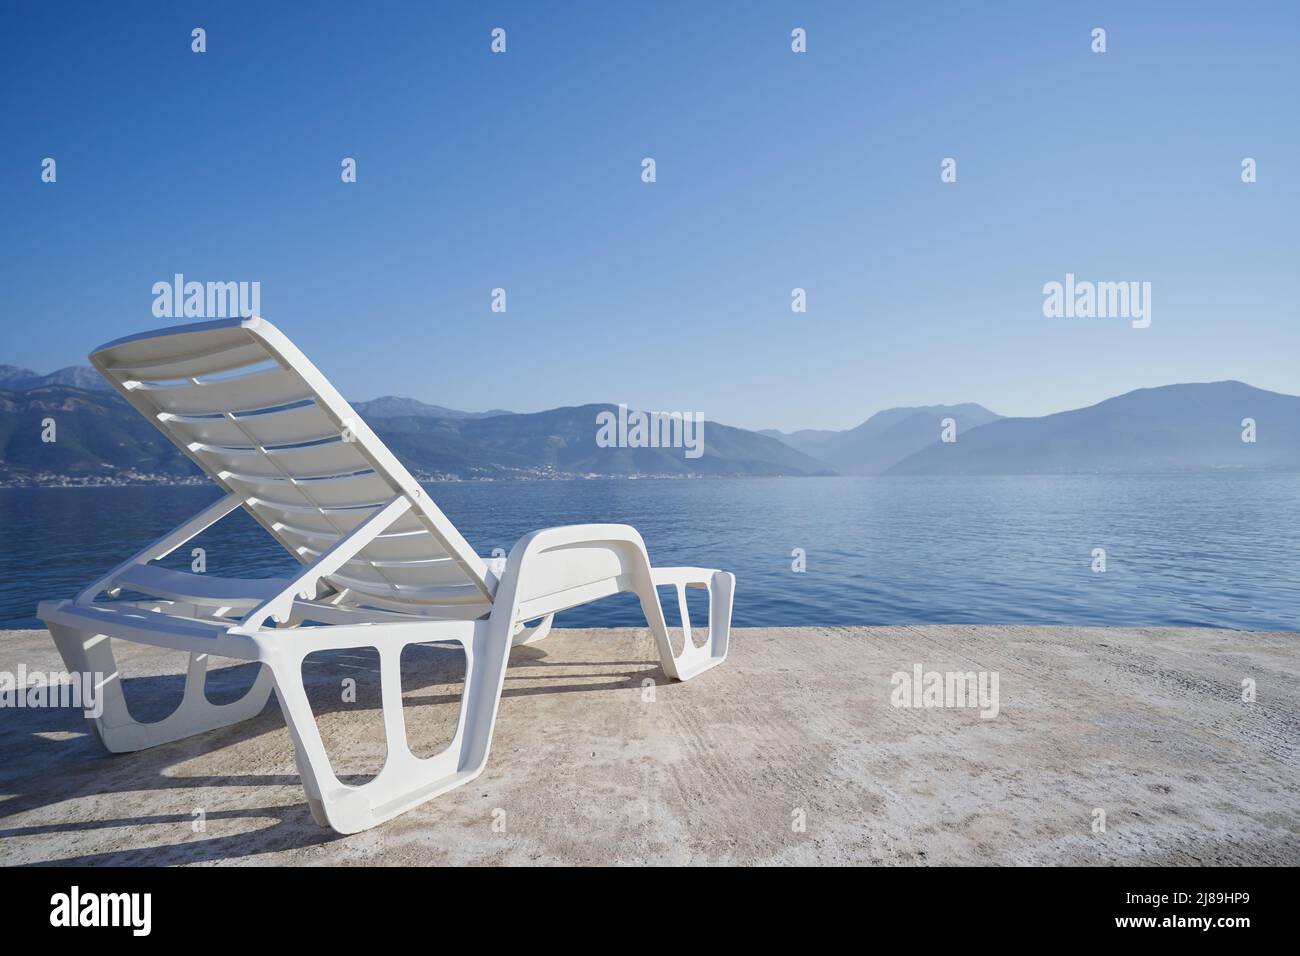 Silla de playa de plástico contra el mar y las montañas, concepto de viaje Foto de stock